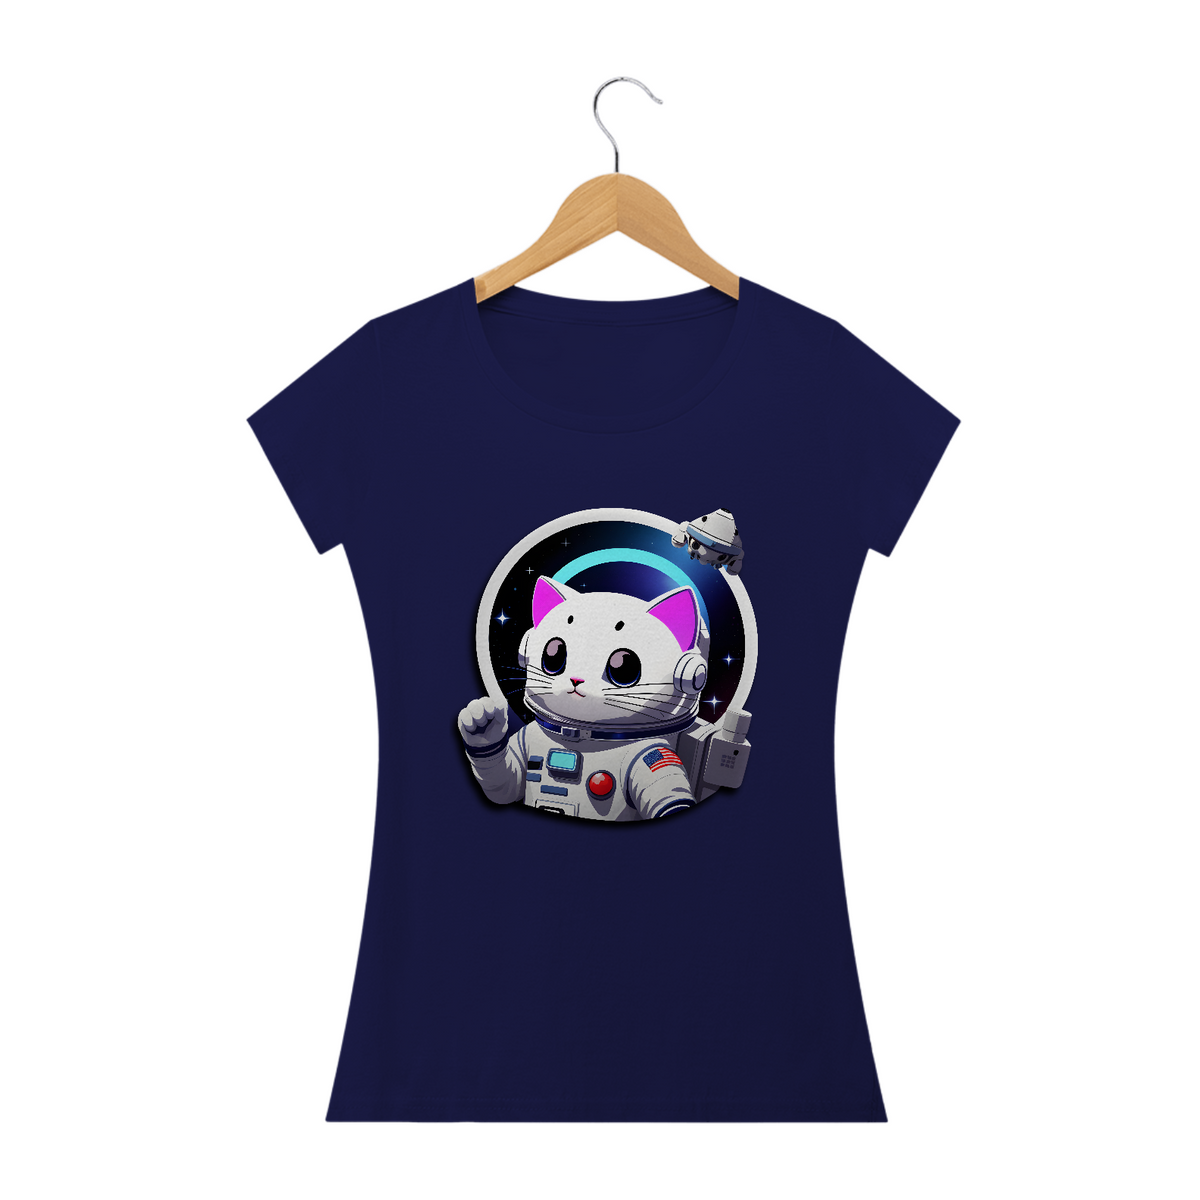 Nome do produto: astronaut cat